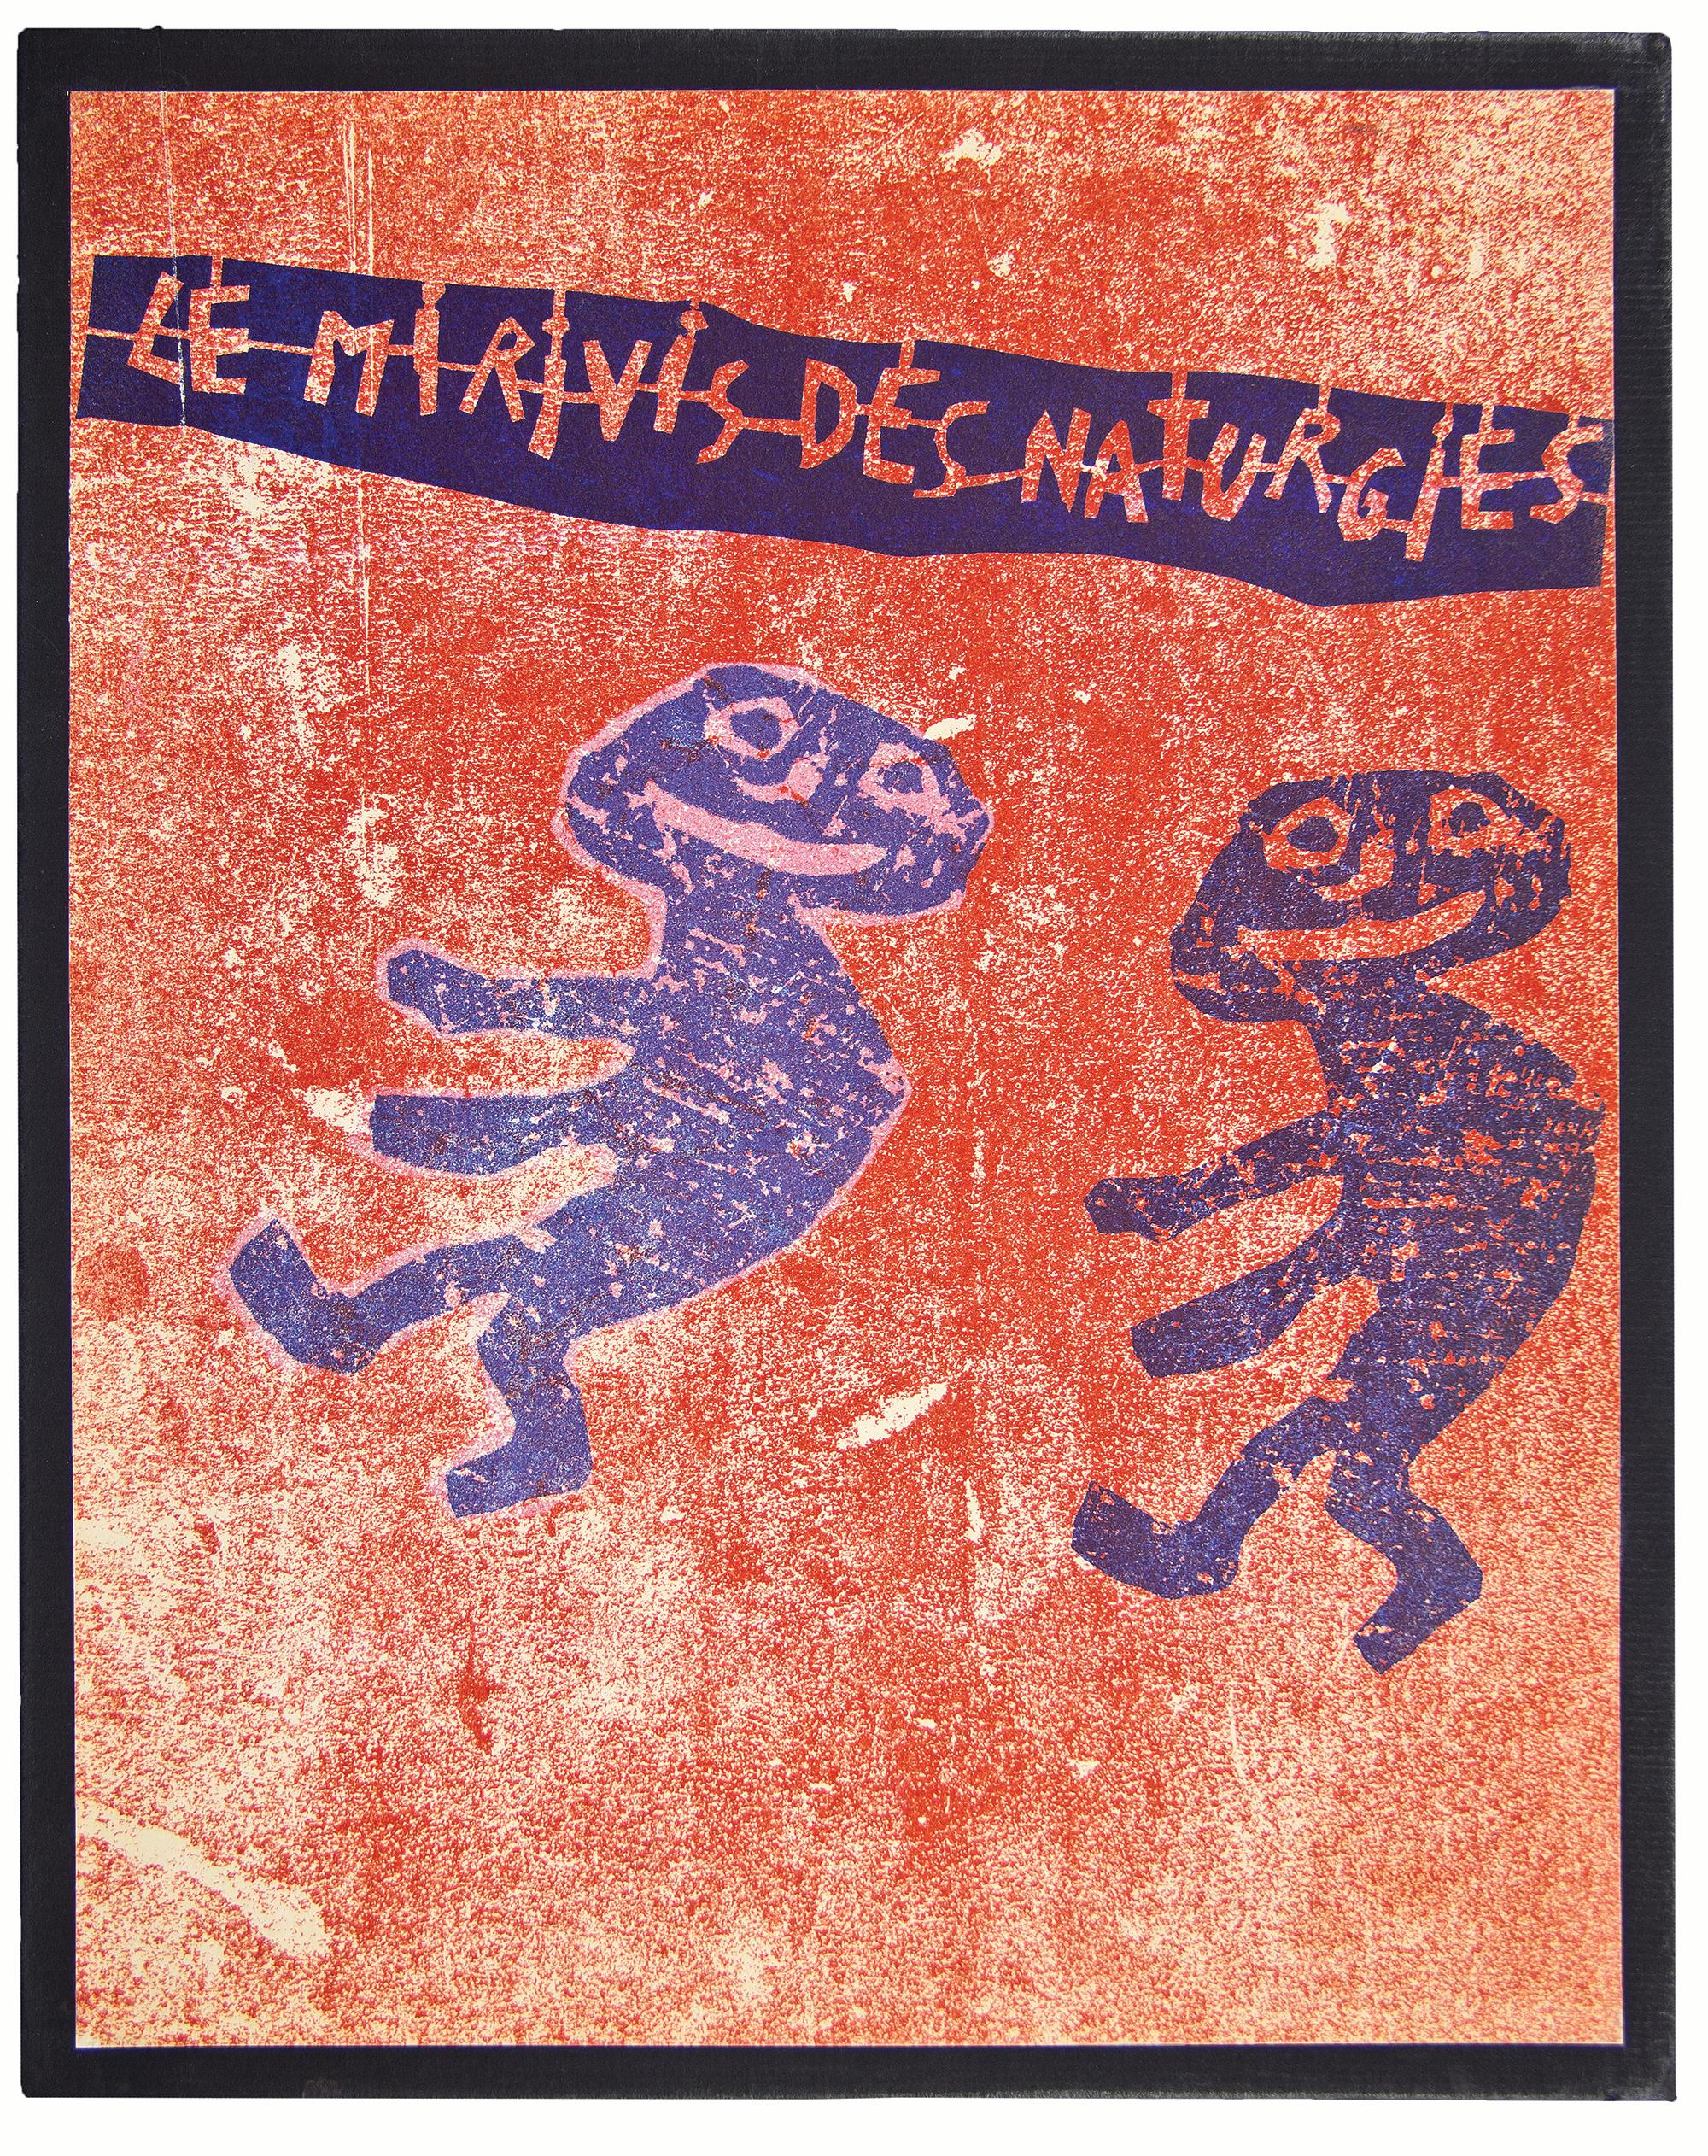 Le Mirivis des Naturgies. - Art by Jean Dubuffet